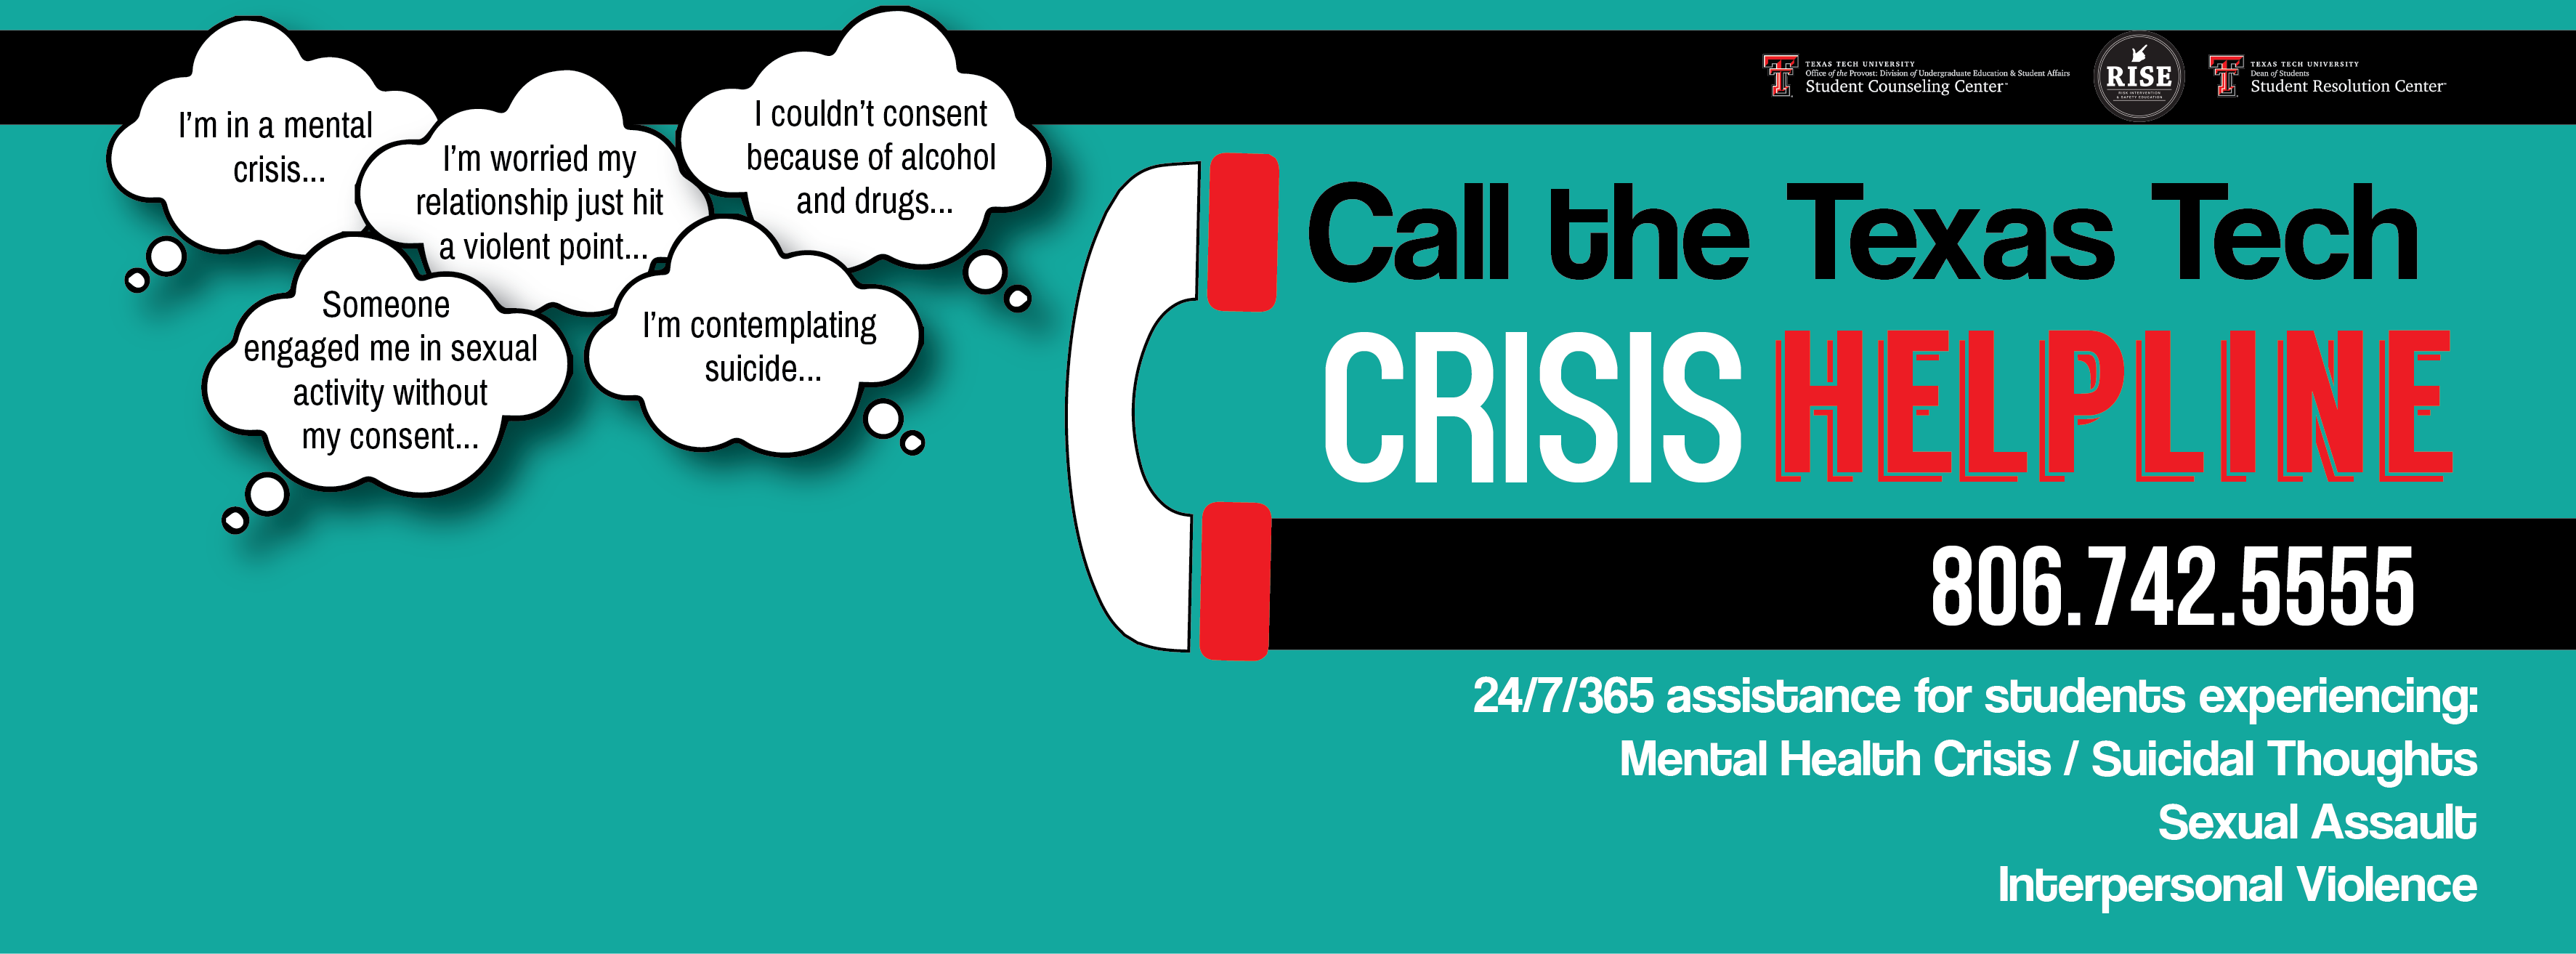 crisis helpline banner